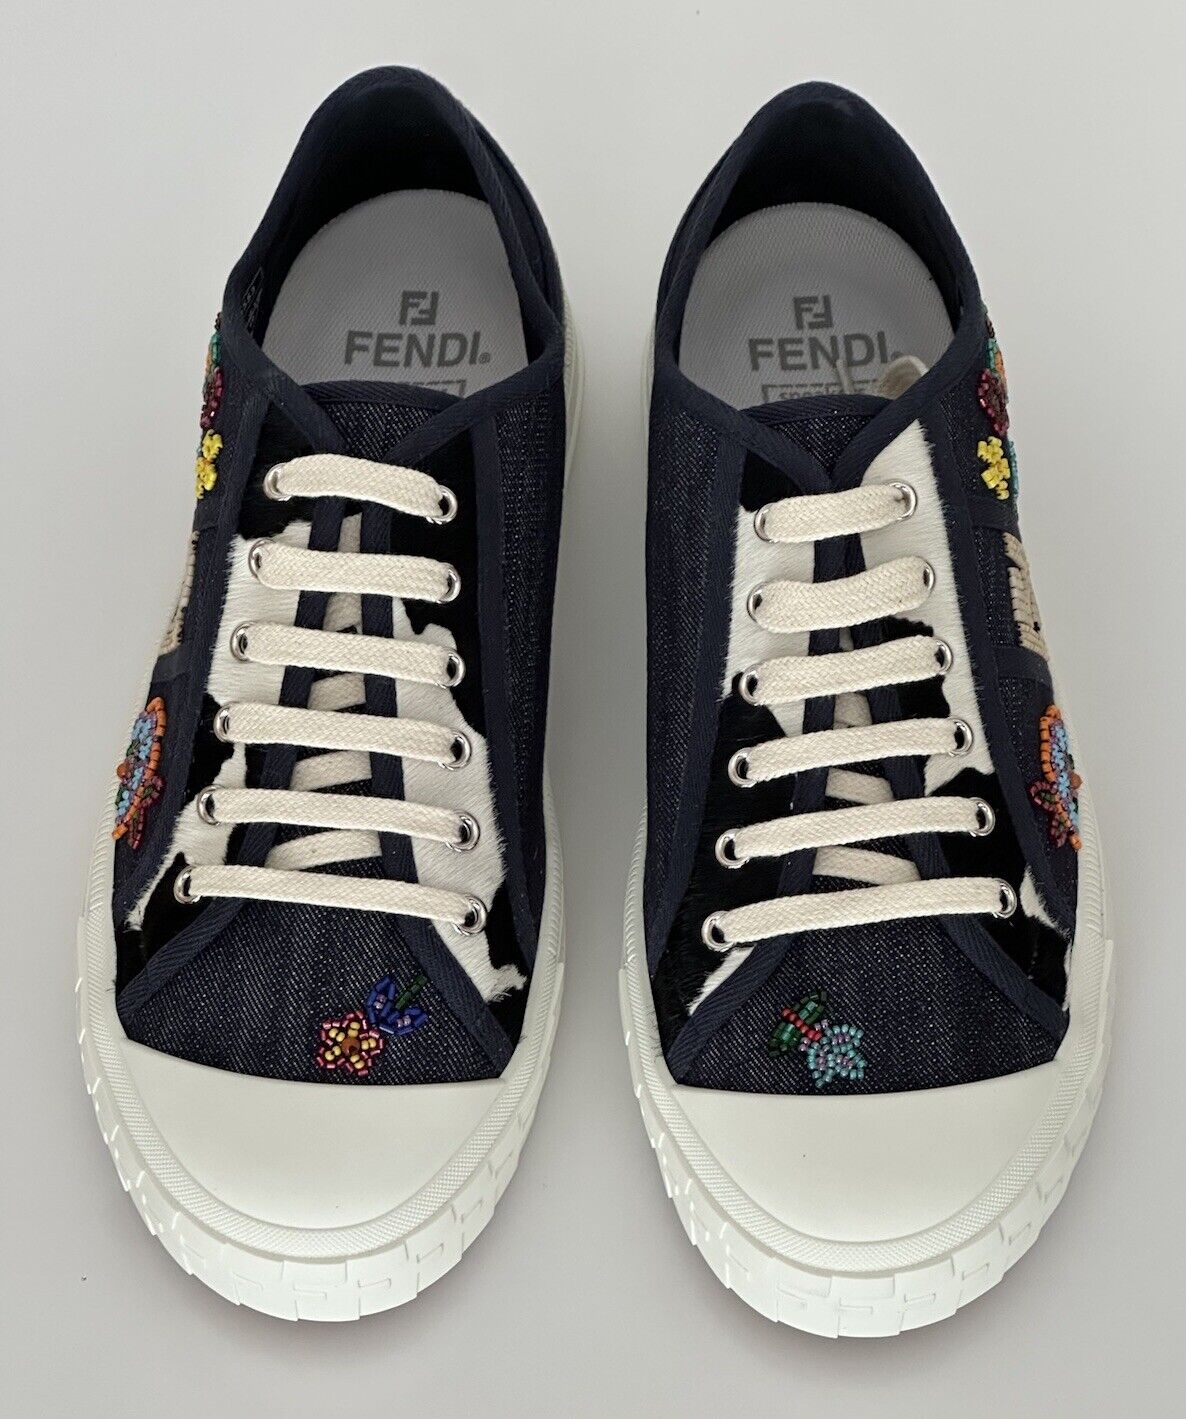 Fendi FF Logo Fabric/Calf Leather Blue Sneakers 12 US 11 Fendi 7E1553 NIB $1250